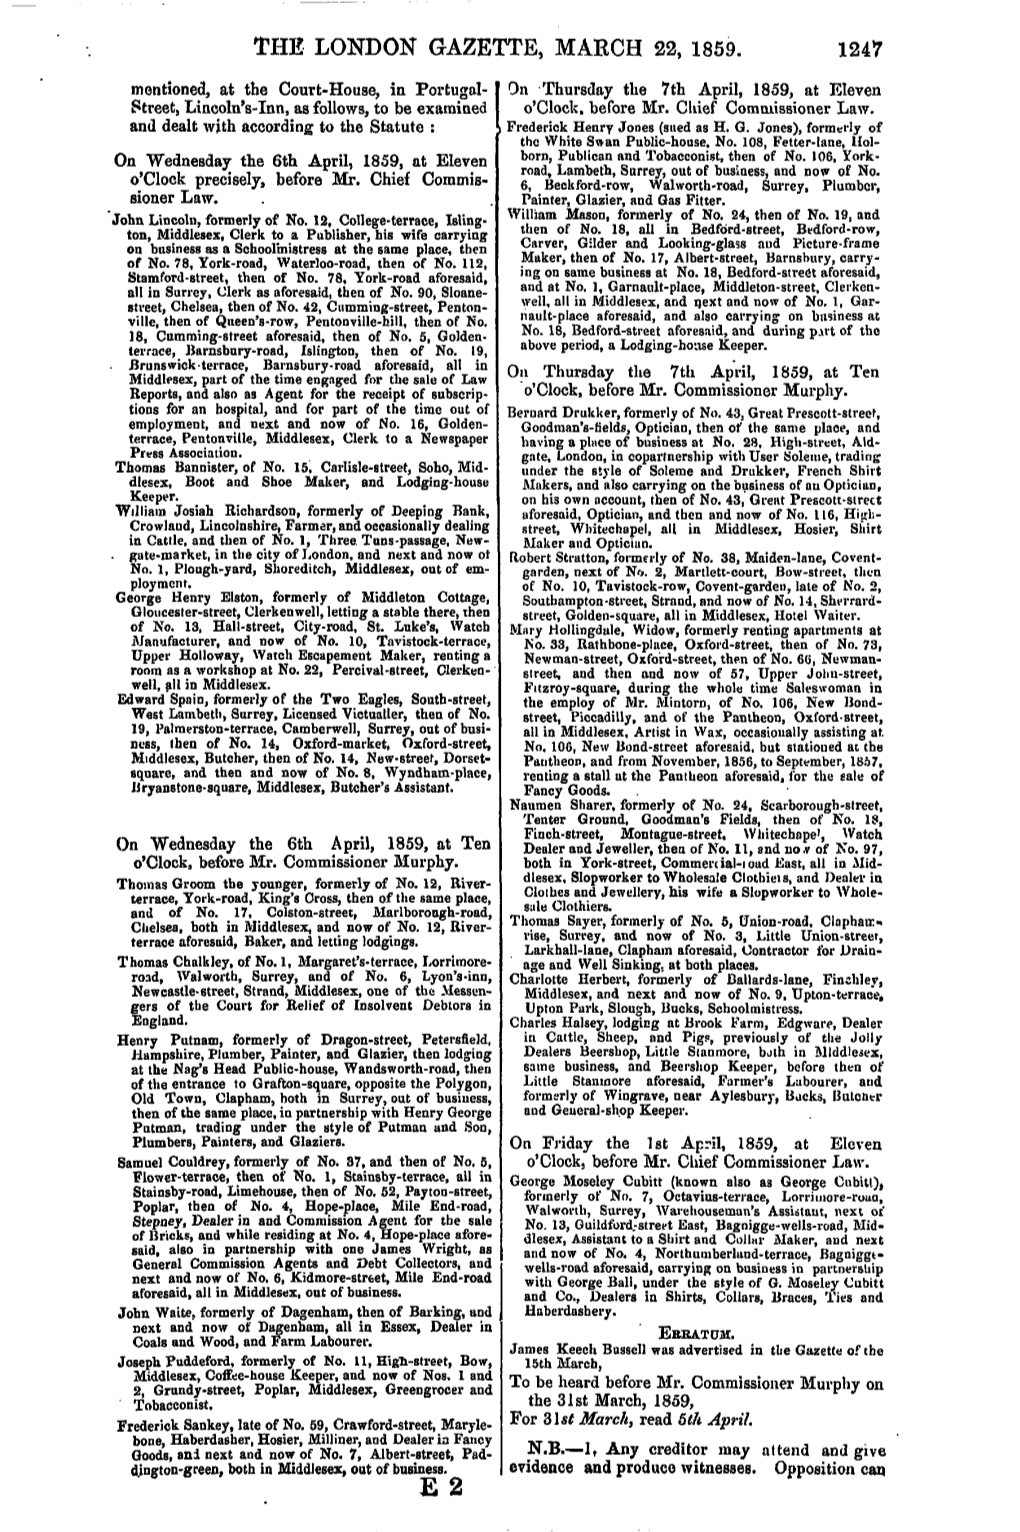 The London Gazette, March 22, 1859